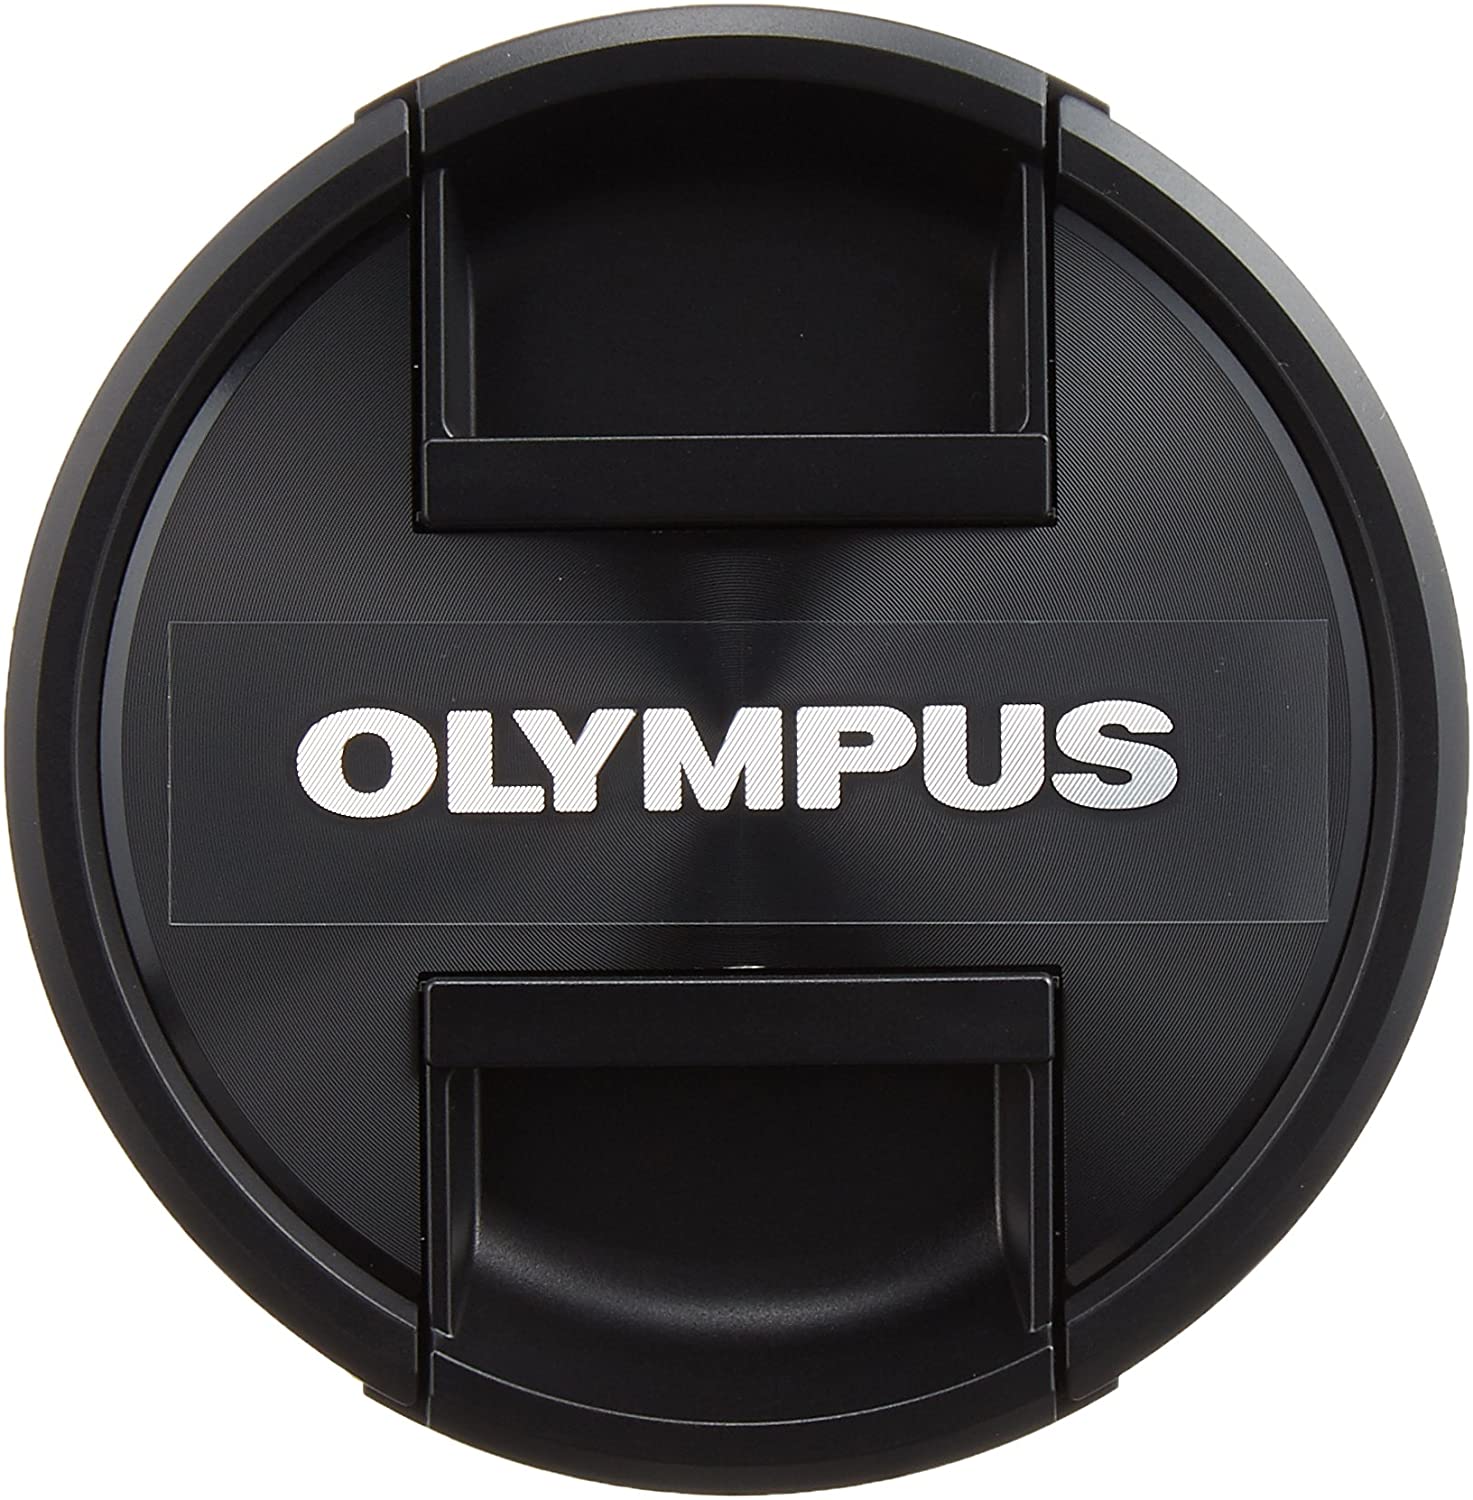 LENS CAP Olympus LC-58mm-77mm ของแท้ 100% (ดูขนาดหน้าเลนส์ตัวเองก่อนกดซื้อด้วยนะครับ อย่ากดซื้อโดยไม่เช็คก่อน)